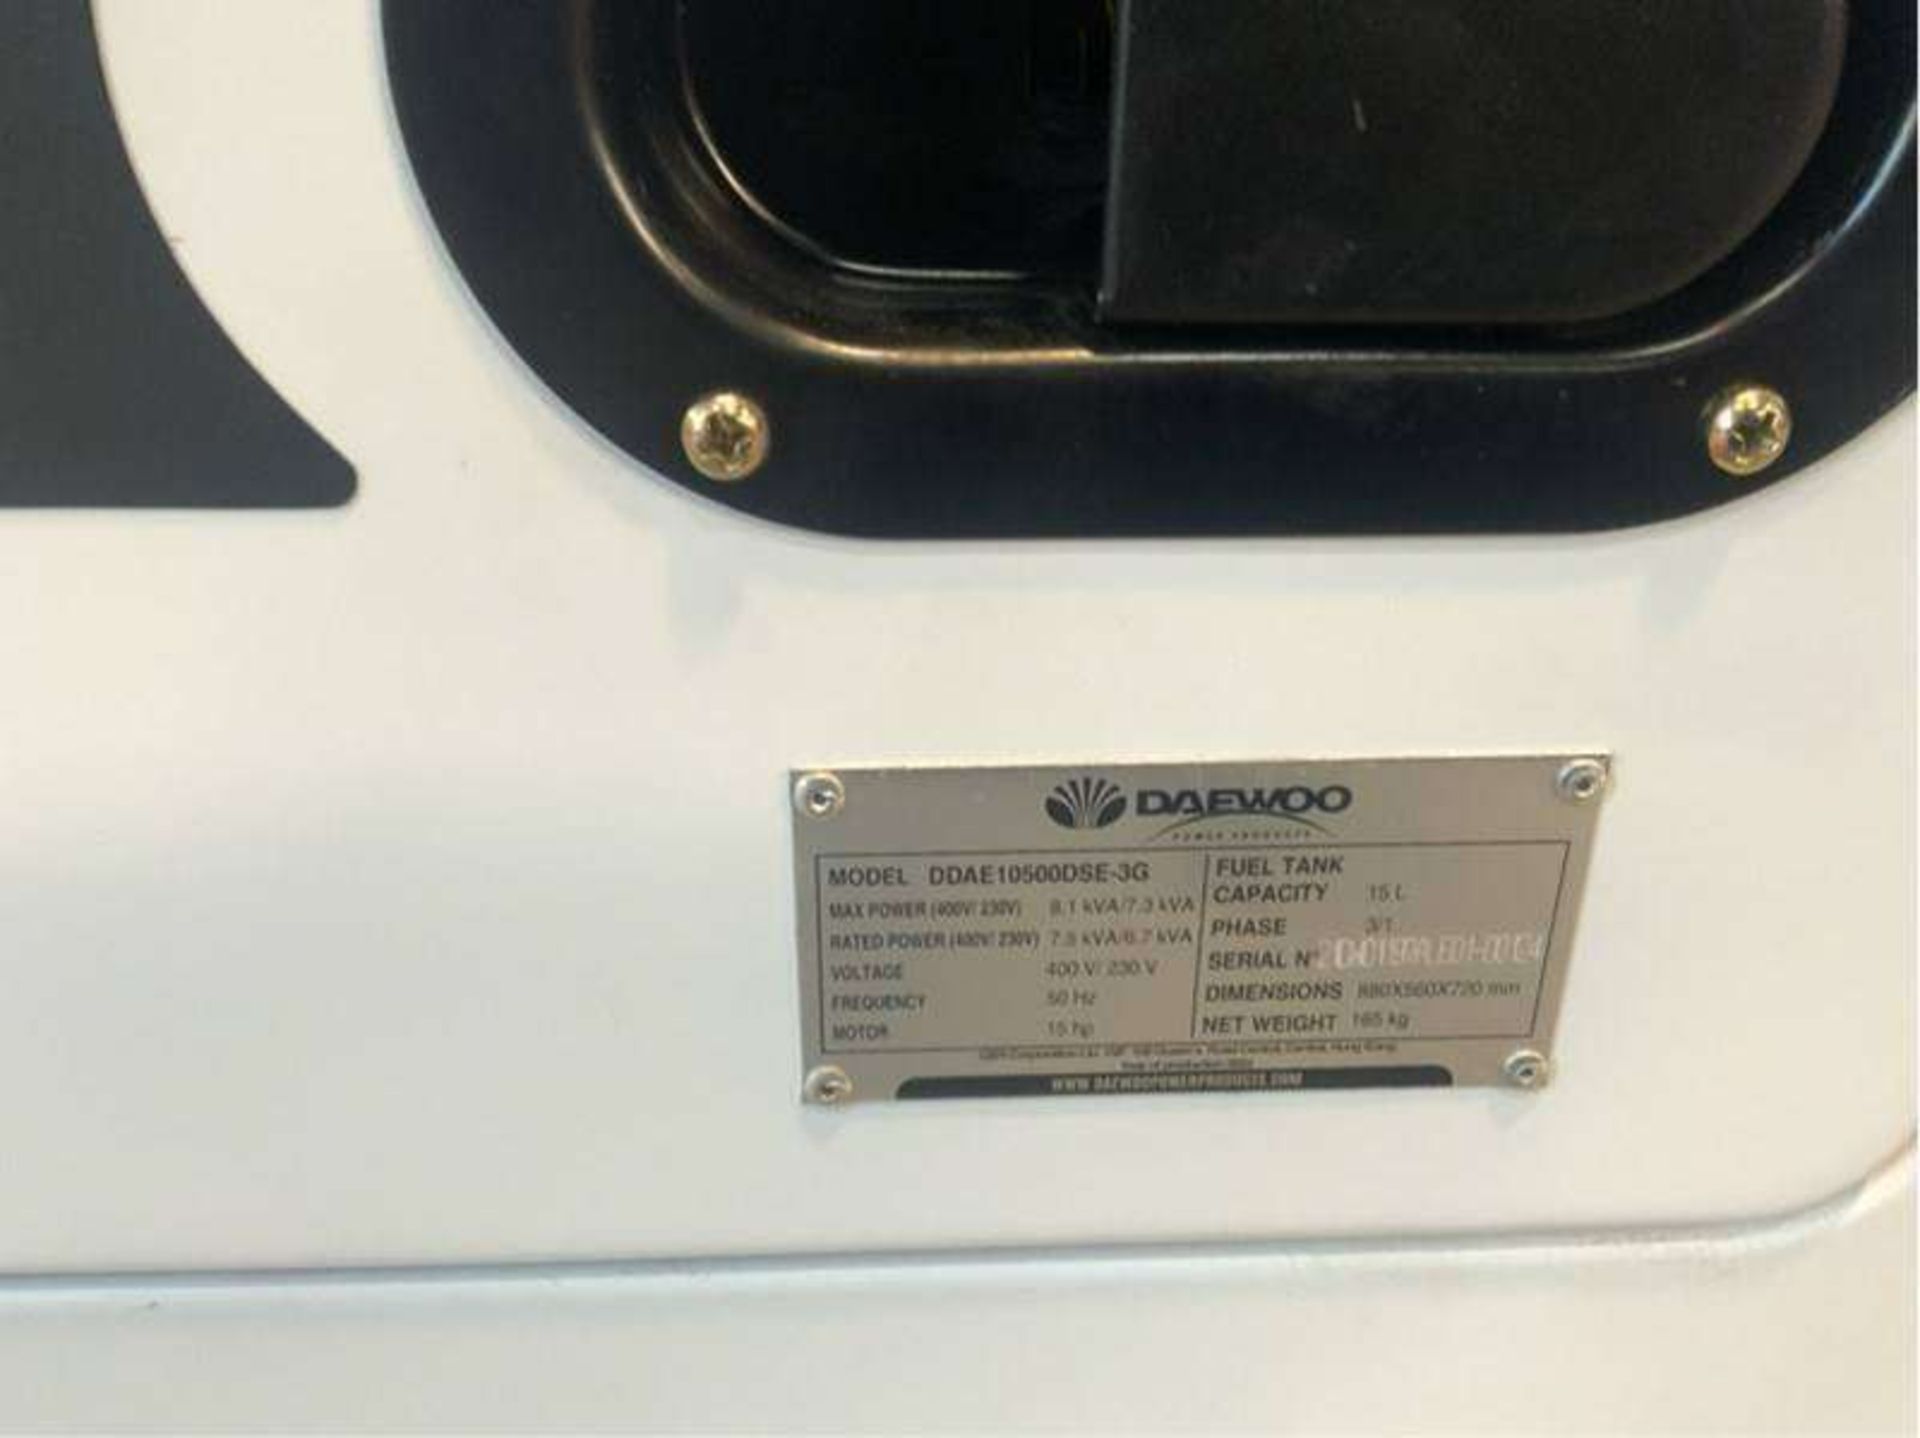 Daewoo Diesel Generator, model: DDAE10500DSE-3G - Image 4 of 6